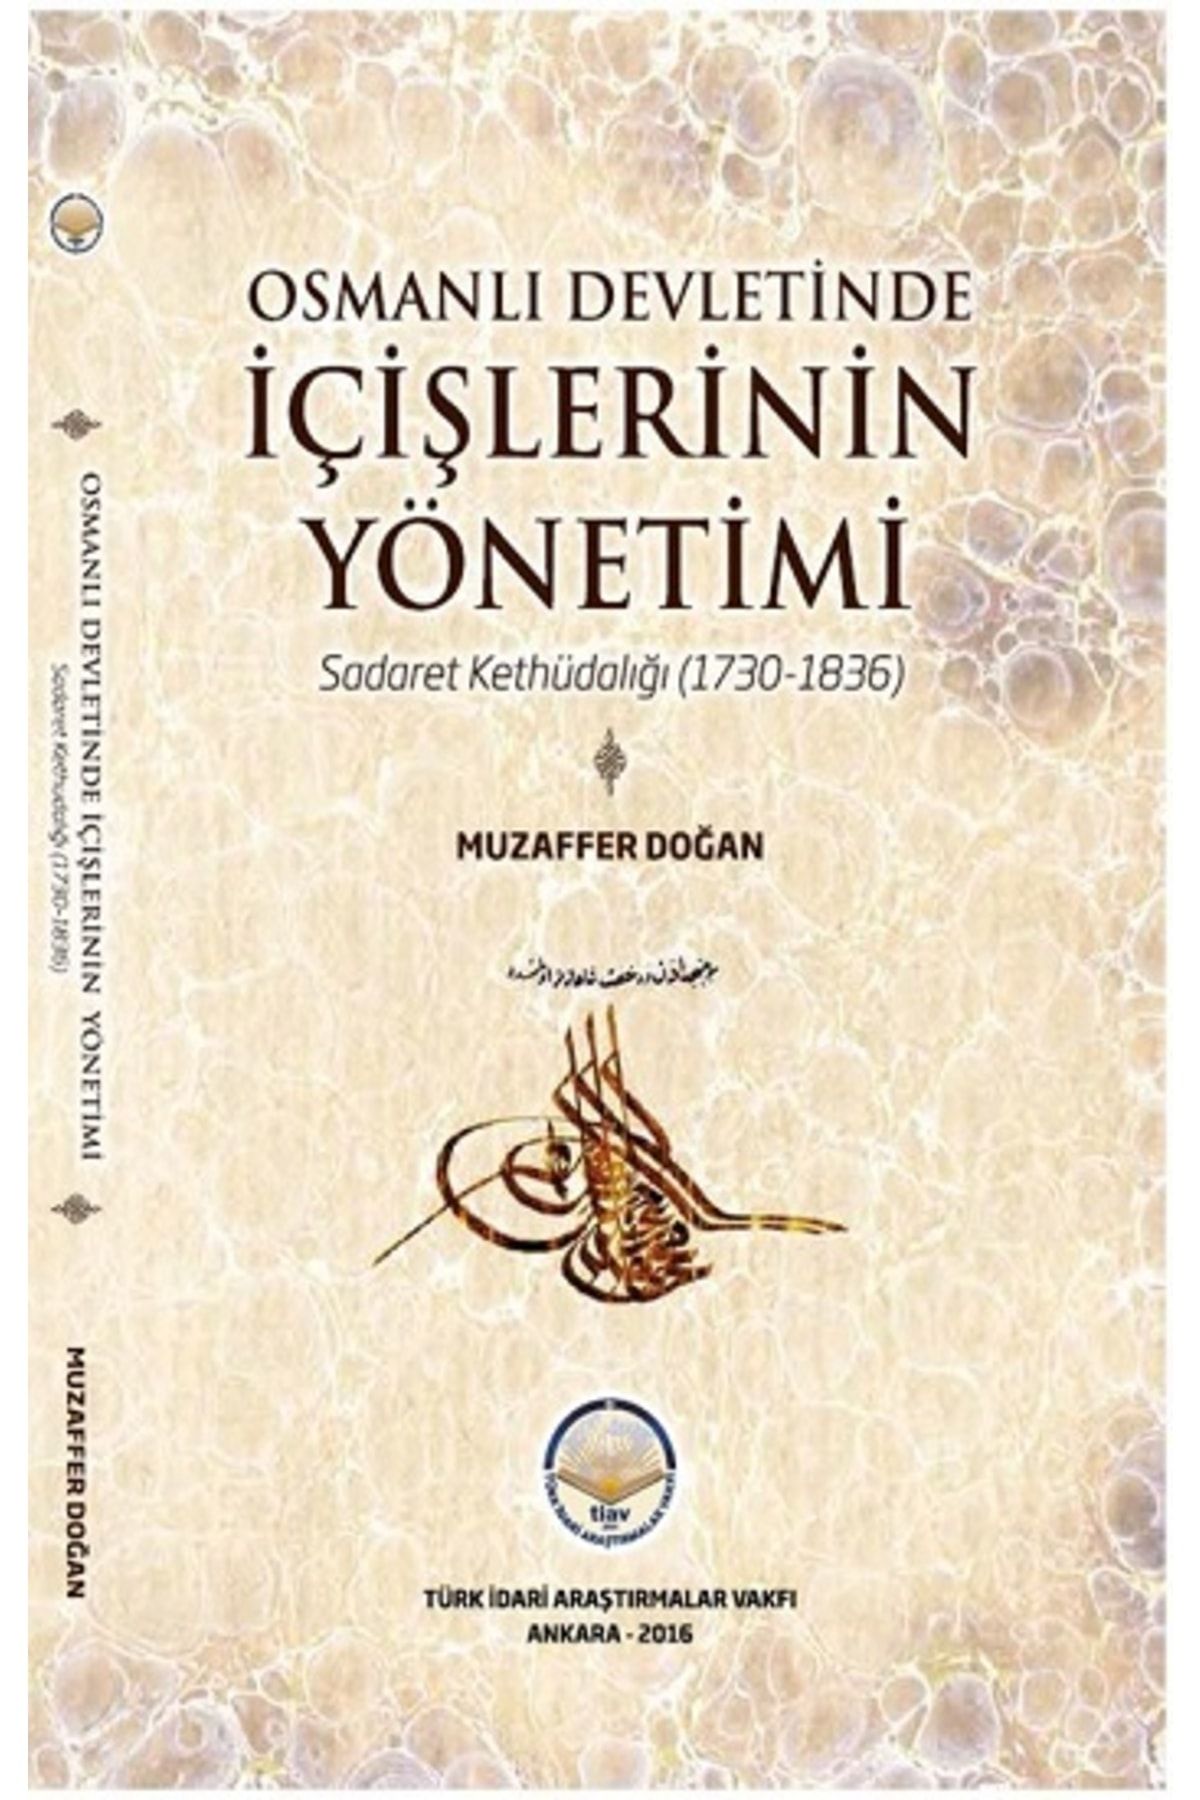 Epsilon Yayınevi Osmanlı Devletinde Içişlerinin Yönetimi - Sadaret Kethüdalığı